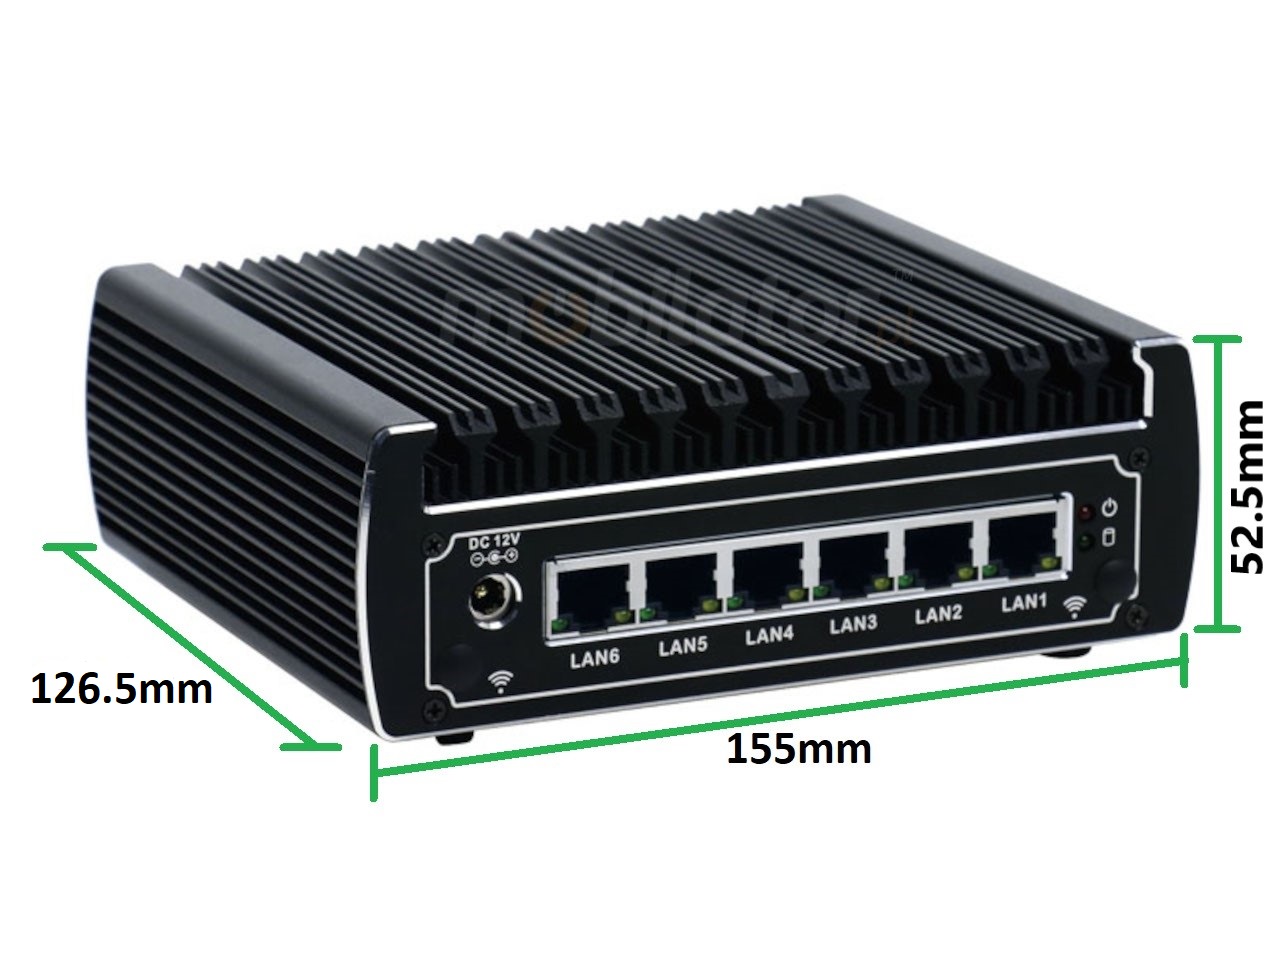   IBOX N133 v.4, wymiary, SSD, DDR4, przemysowy, may, szybki, niezawodny, fanless, industrial, small, LAN, INTEL i3